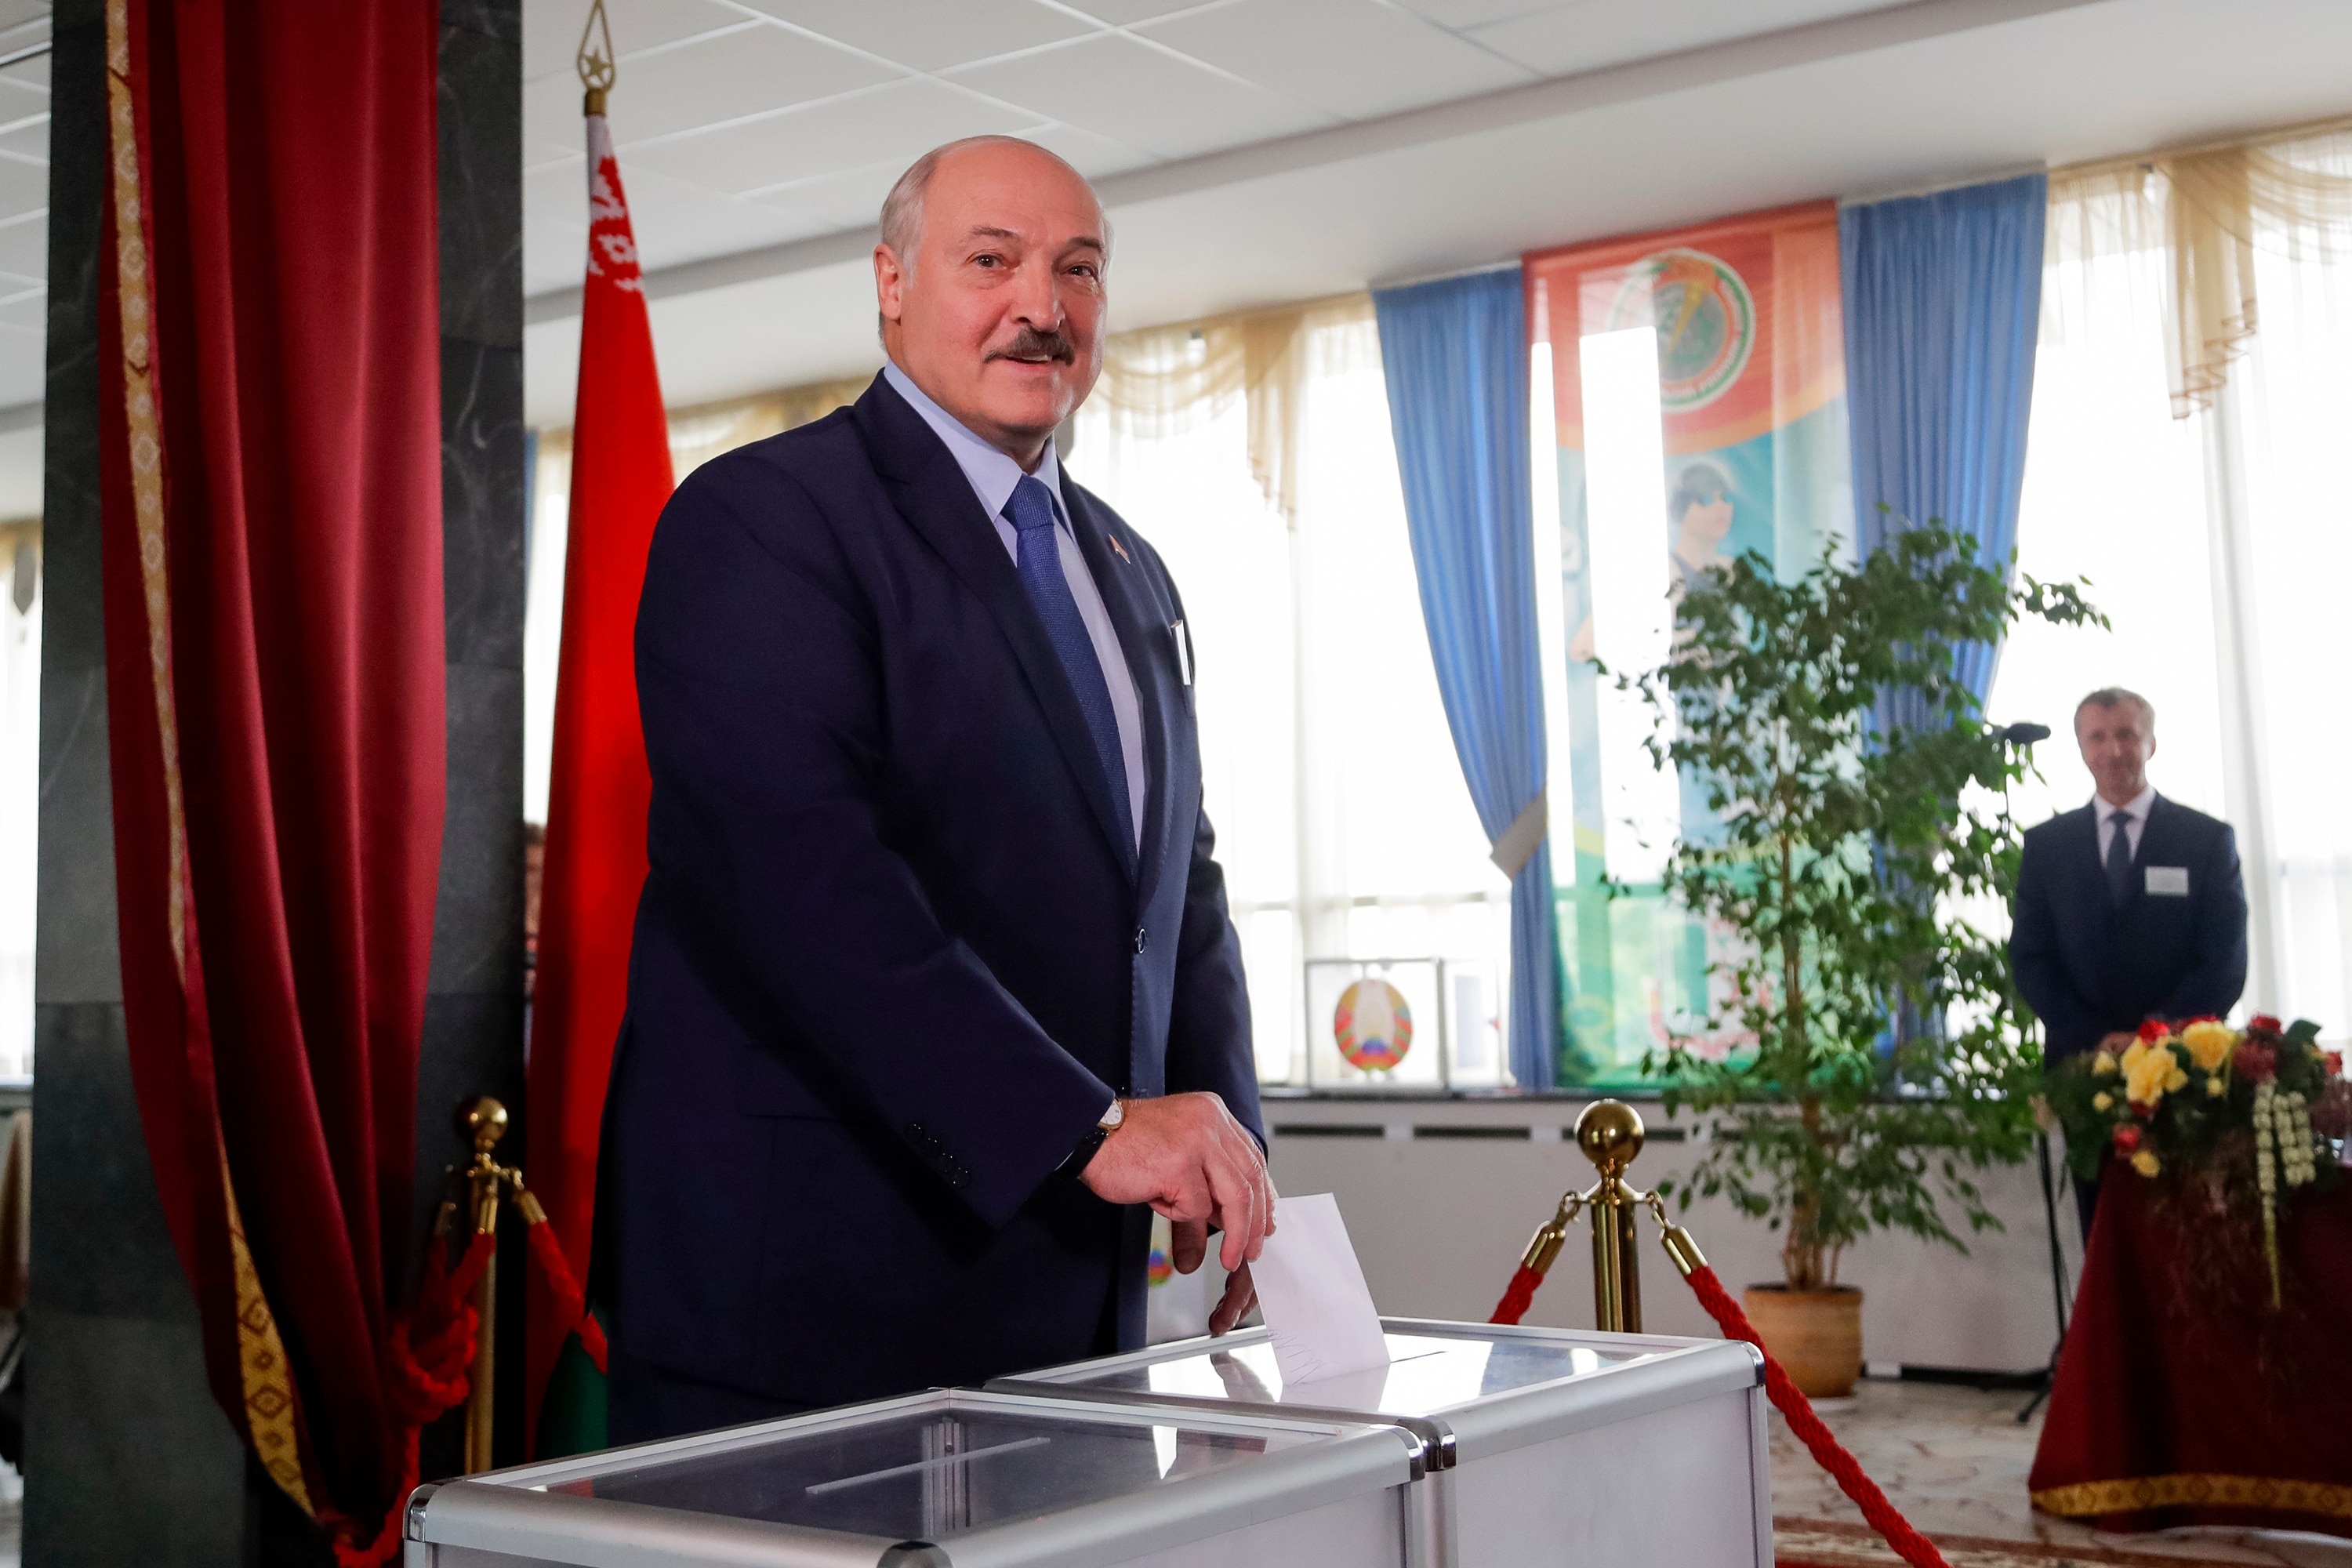 يحكم الرئيس البيلاروسي ألكسندر لوكاشينكو ، الذي غالبًا ما يشار إليه على أنه آخر دكتاتور أوروبا ، البلاد منذ عام 1994. 